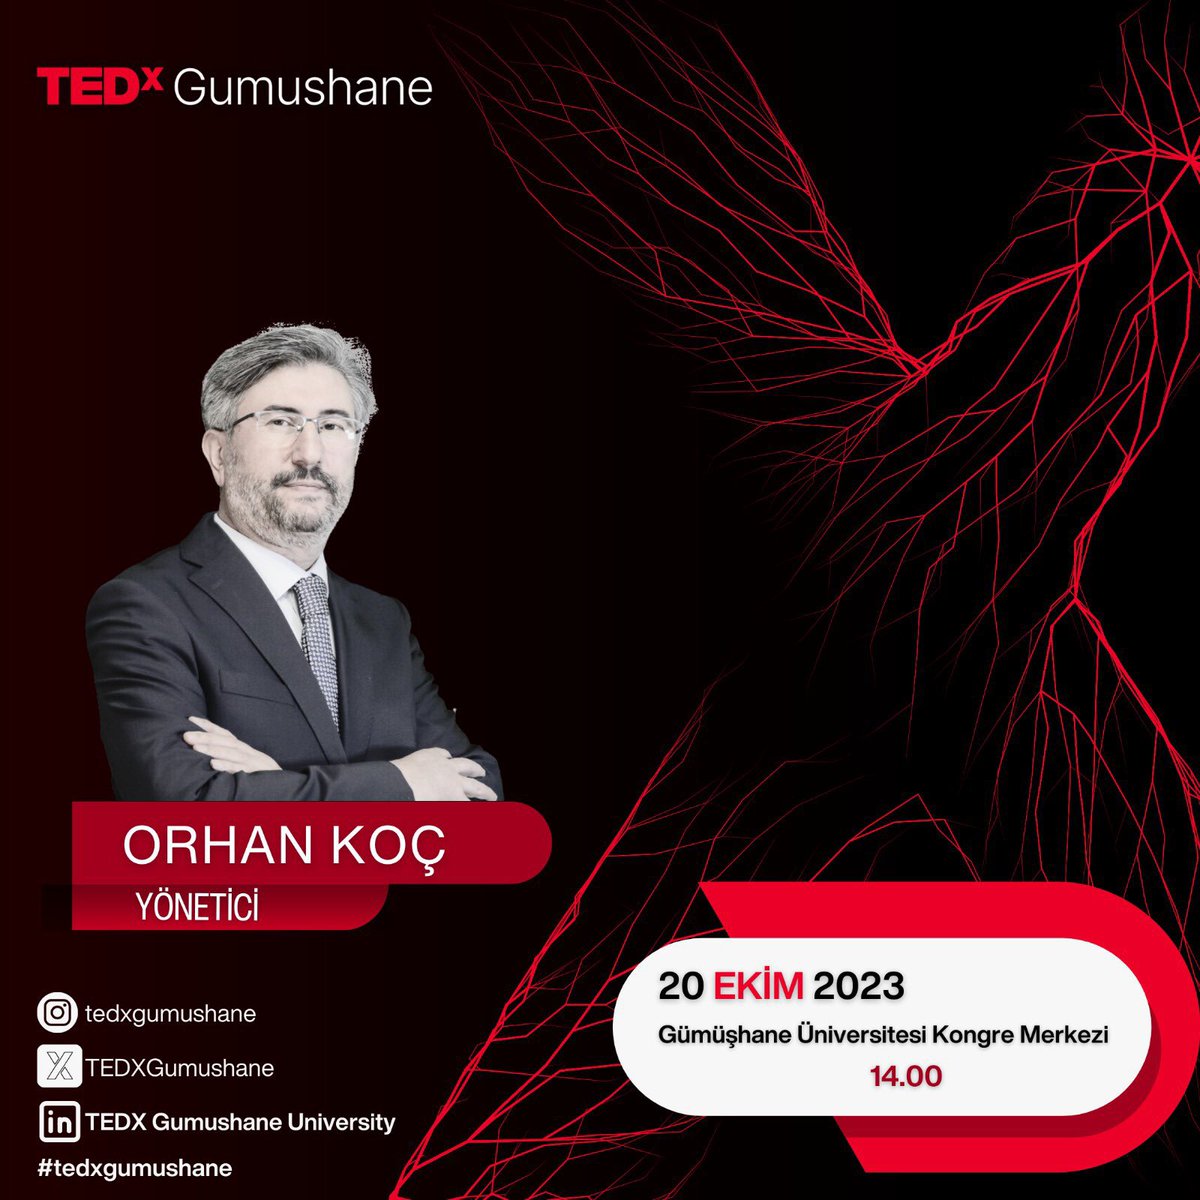 20 Ekim 2023 tarihinde Gümüşhane Üniversitemizde görüşmek üzere 👋🏻 @TEDXGumushane @gumushaneuniv